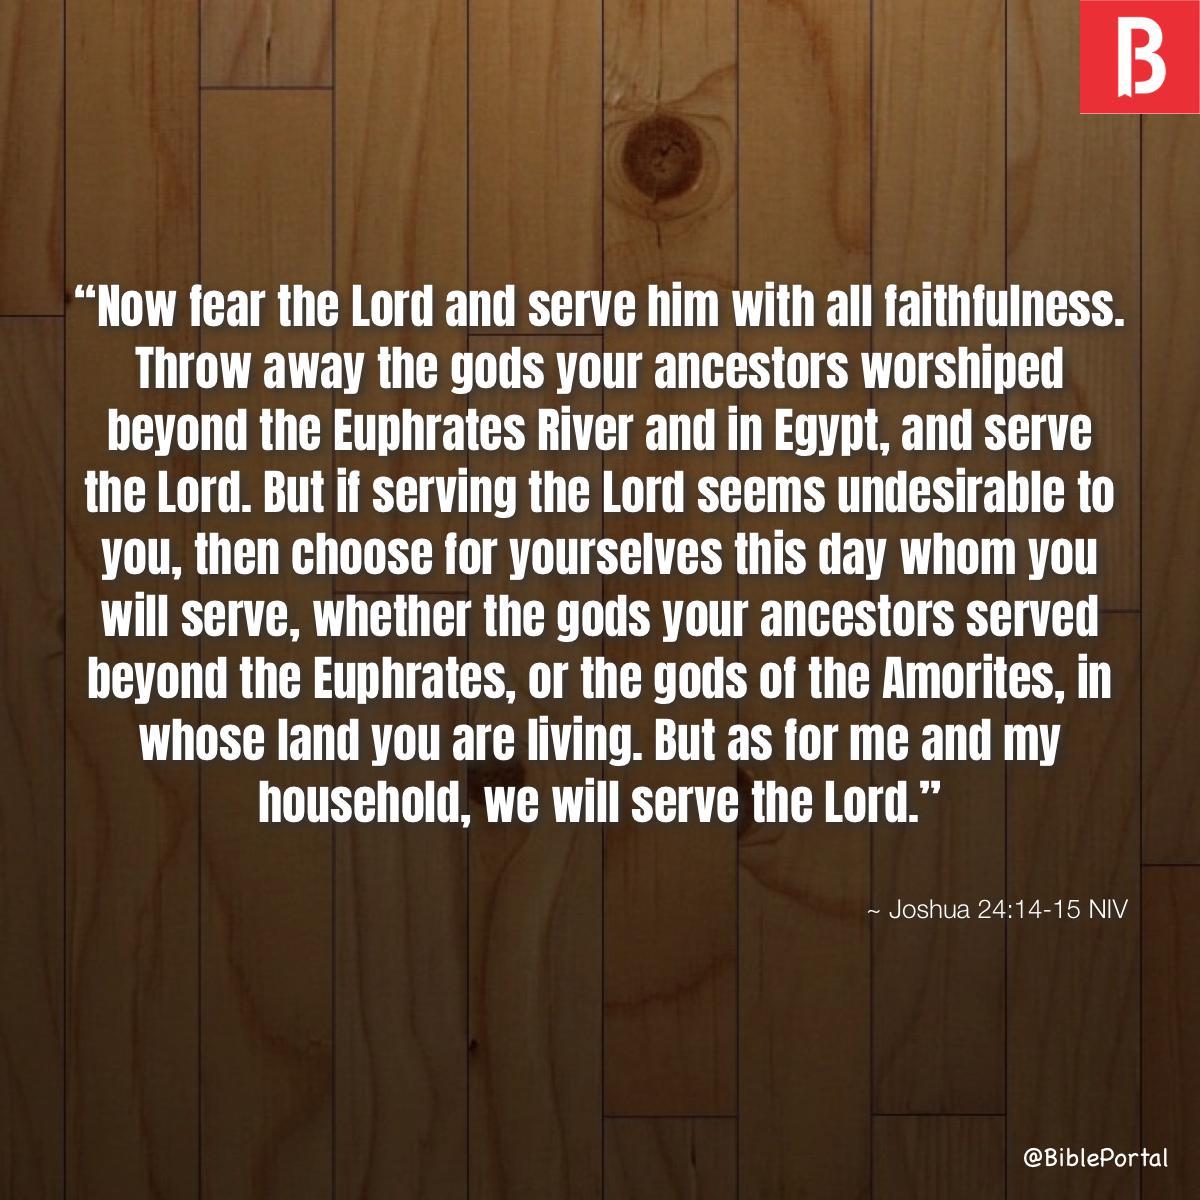 Joshua 24:14-15 NIV